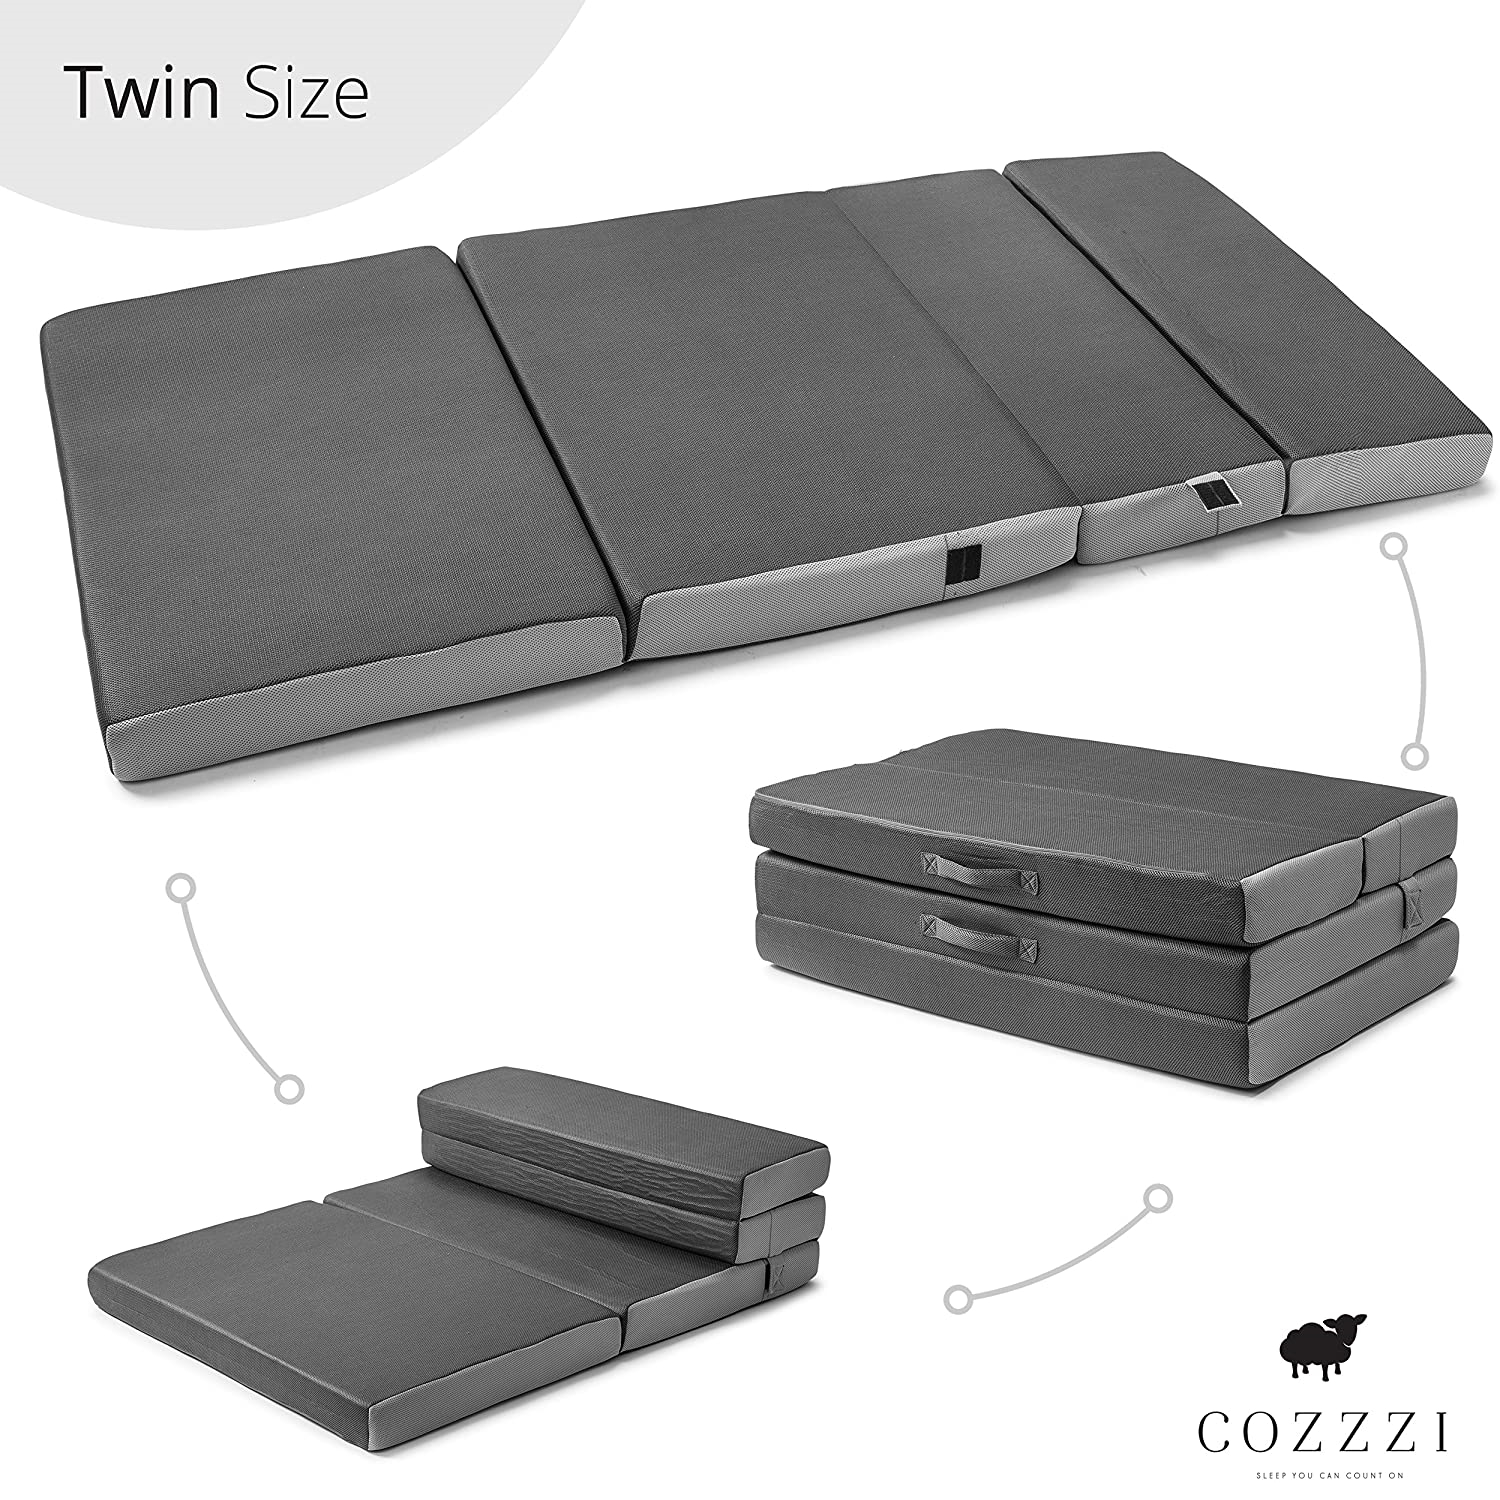 Cozzzi Twin Folding Mattress